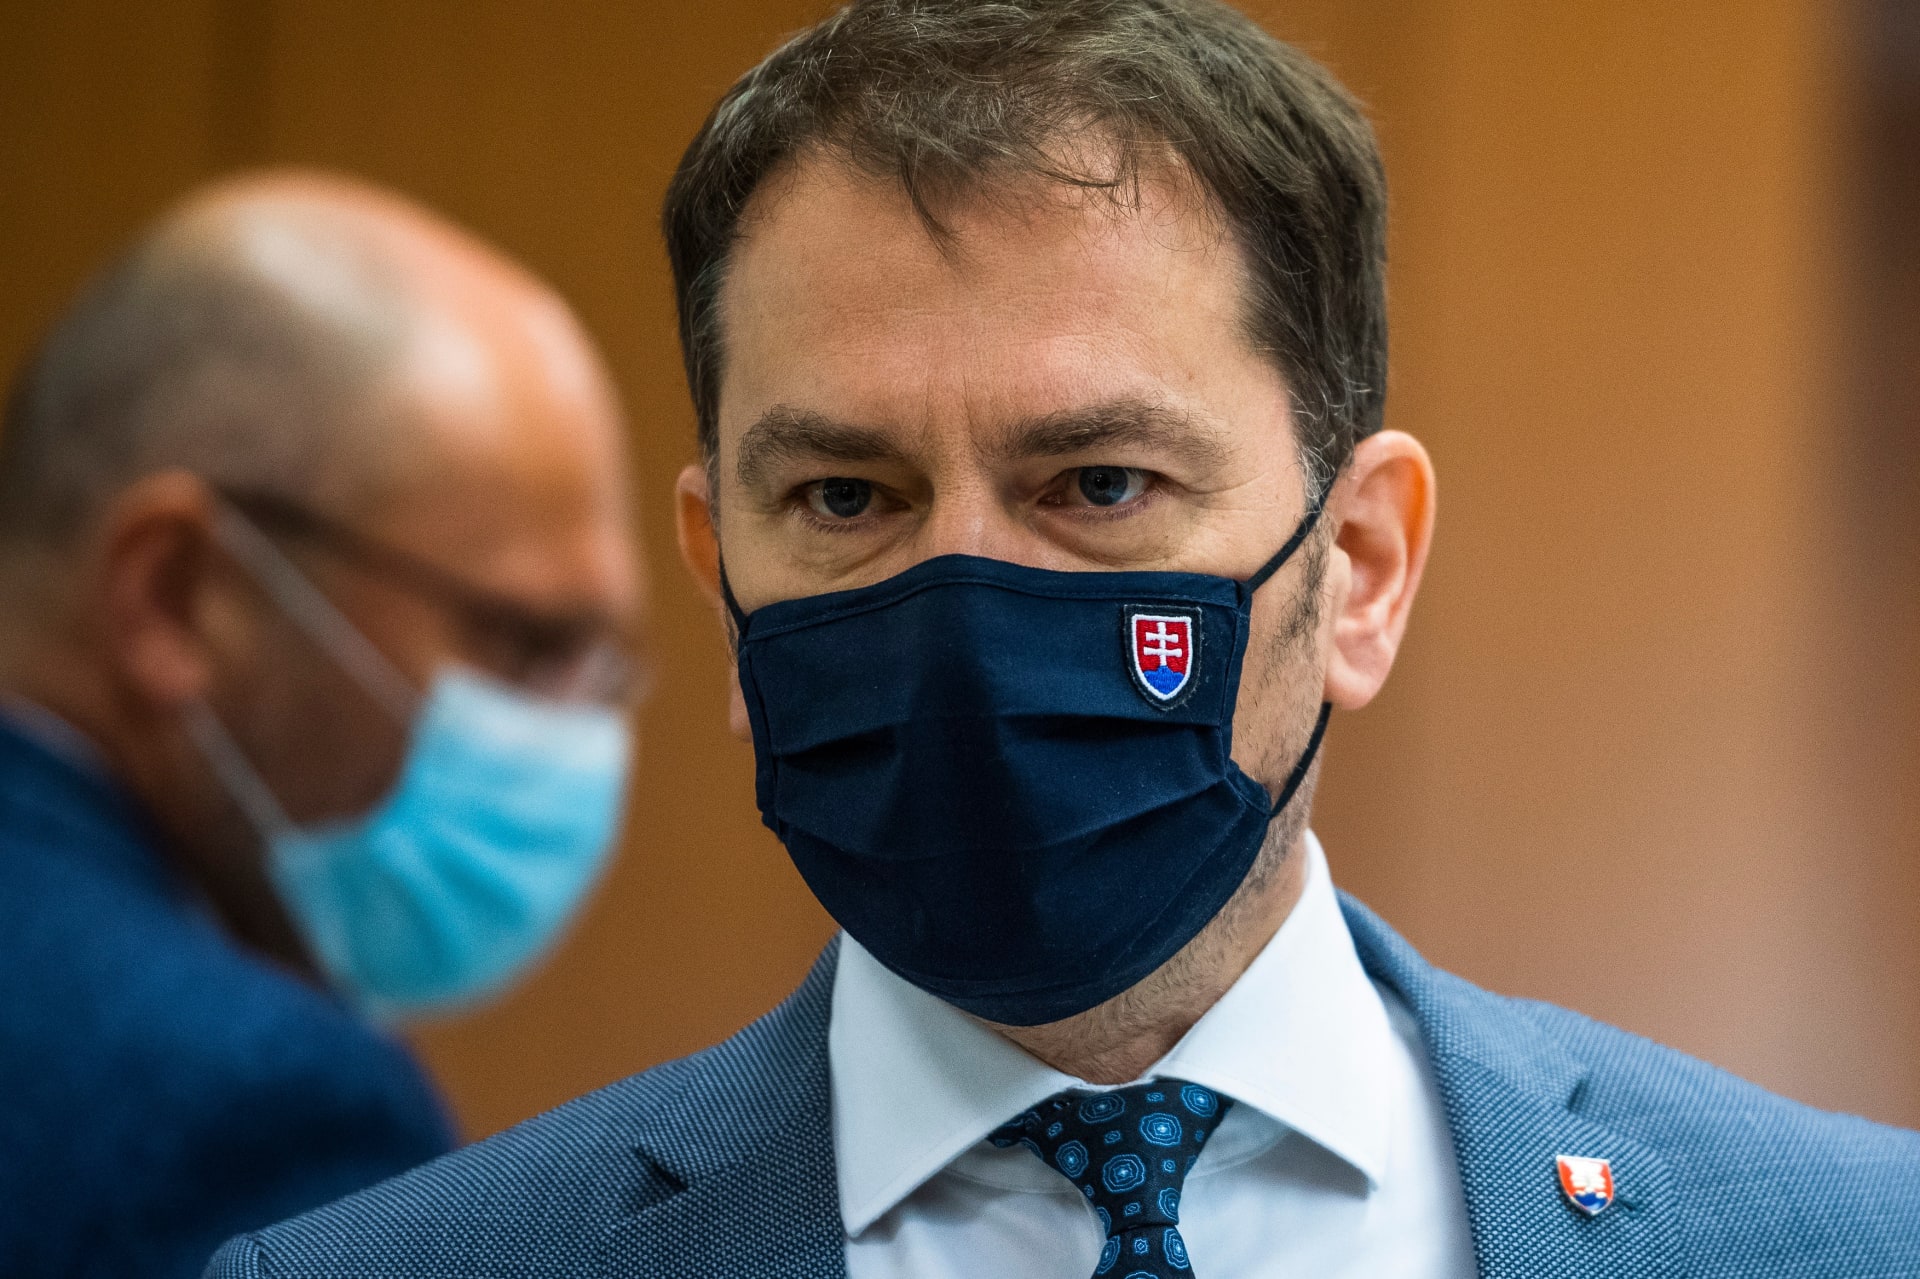 Slovenský premiér Igor Matovič vyčítá Slovákům, že nedodržují opatření proti koronaviru. Aktuálně tak jedná o extrémním zpřísnění.